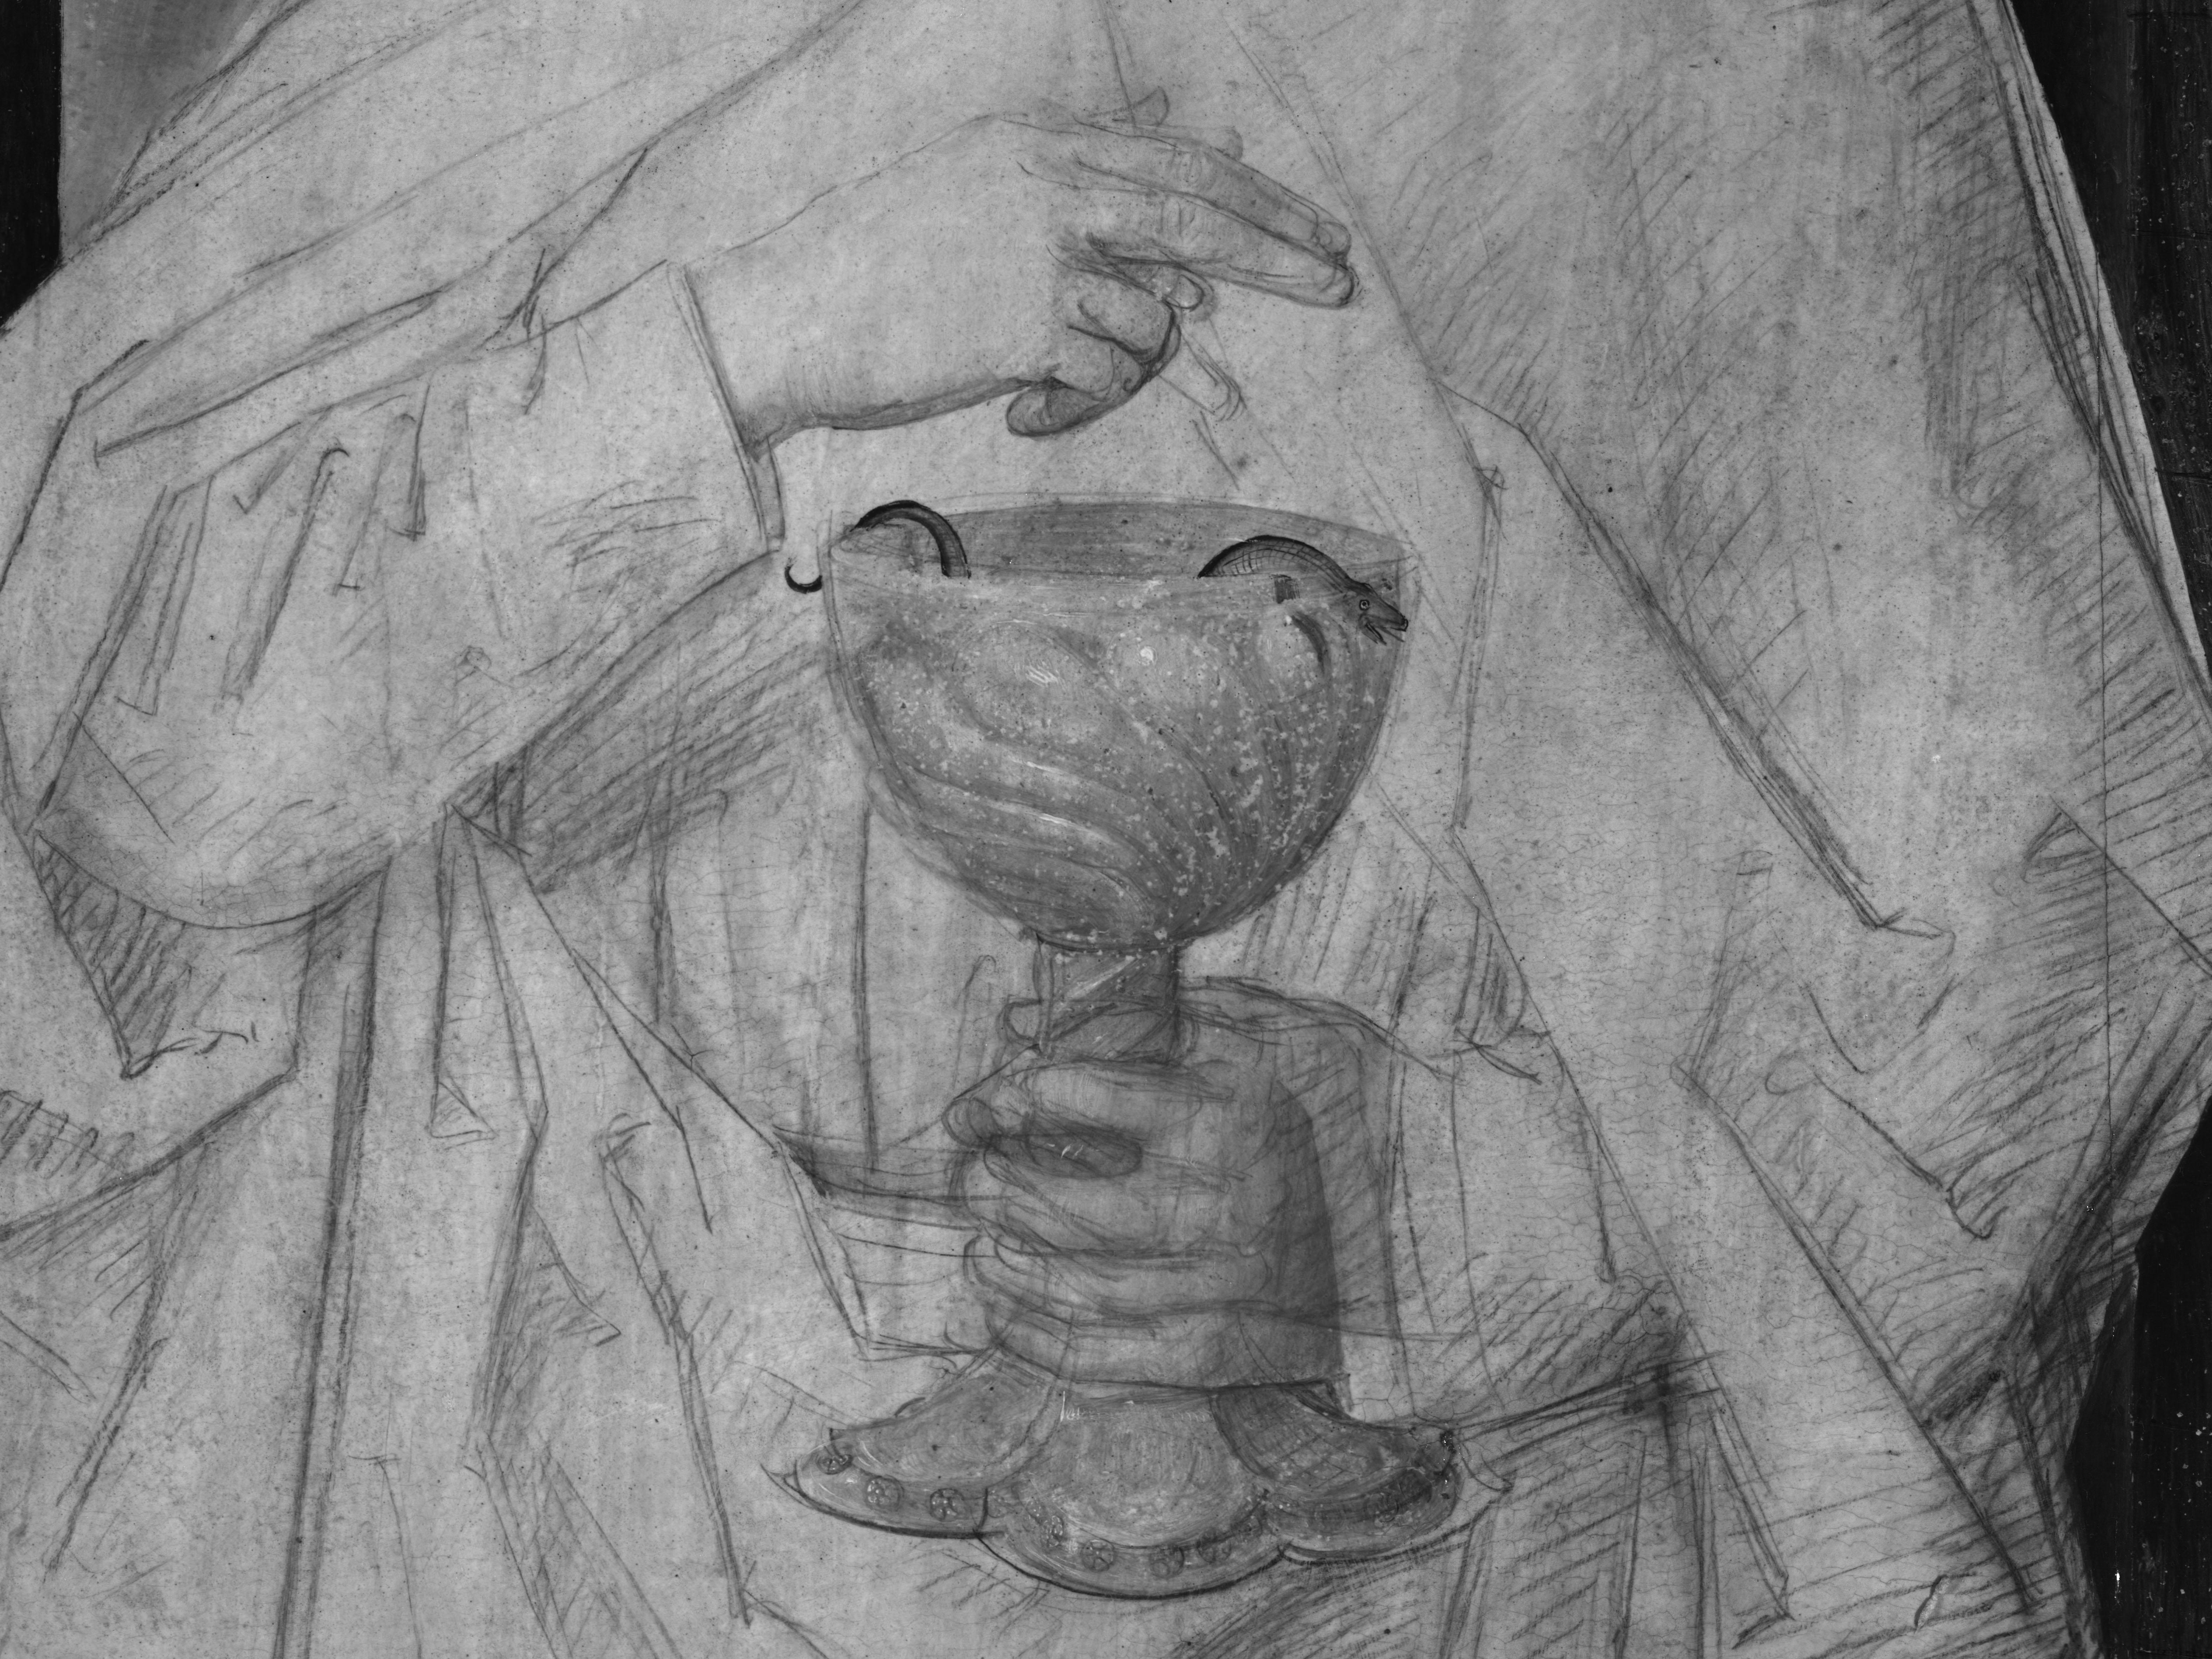 Detail uit het drieluik van Johannes de Doper en Johannes de Evangelist van Hans Memling. Op het detail is te zien hoe Johannes de Evangelist een beker vasthoudt in zijn rechterhand met daarin een kleine slang. Met zijn linkerhand maakt hij een zegenend gebaar boven de beker. De foto werd genomen via infraroodreflectografie, wat een zwartwit beeld oplevert.